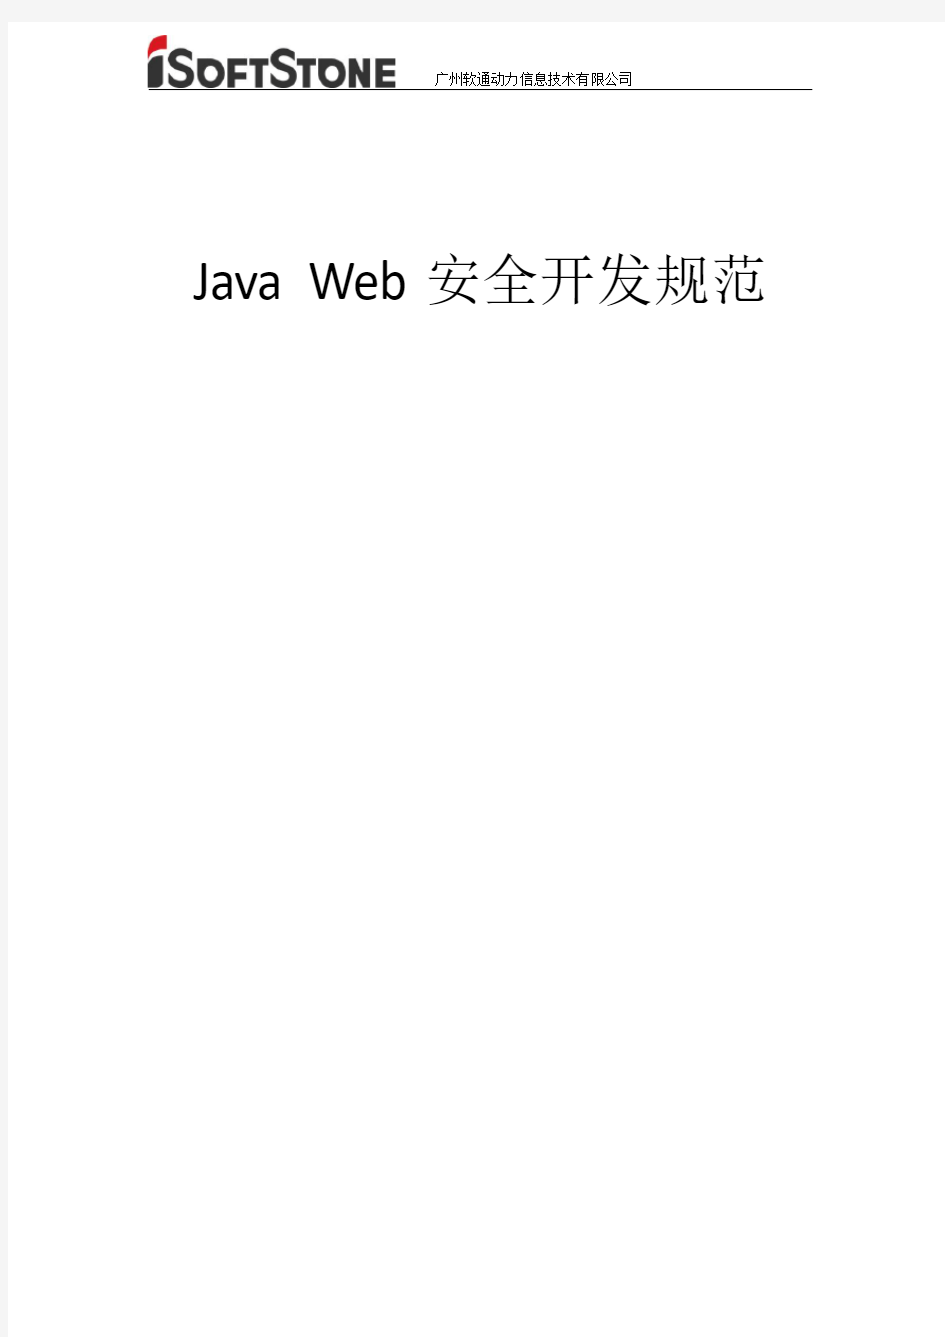 Java Web安全开发规范